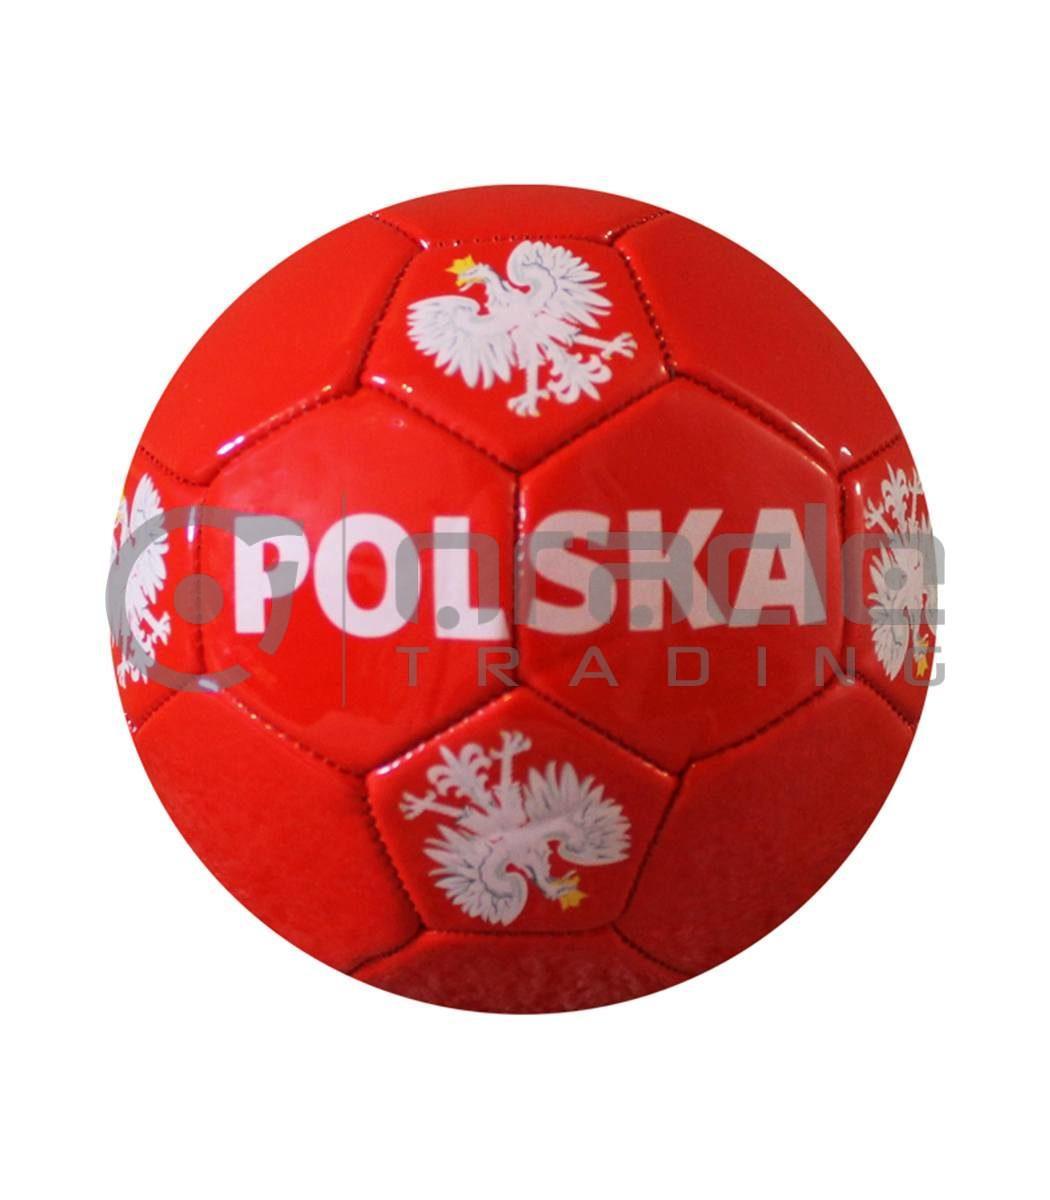 Poland Small Soccer Ball